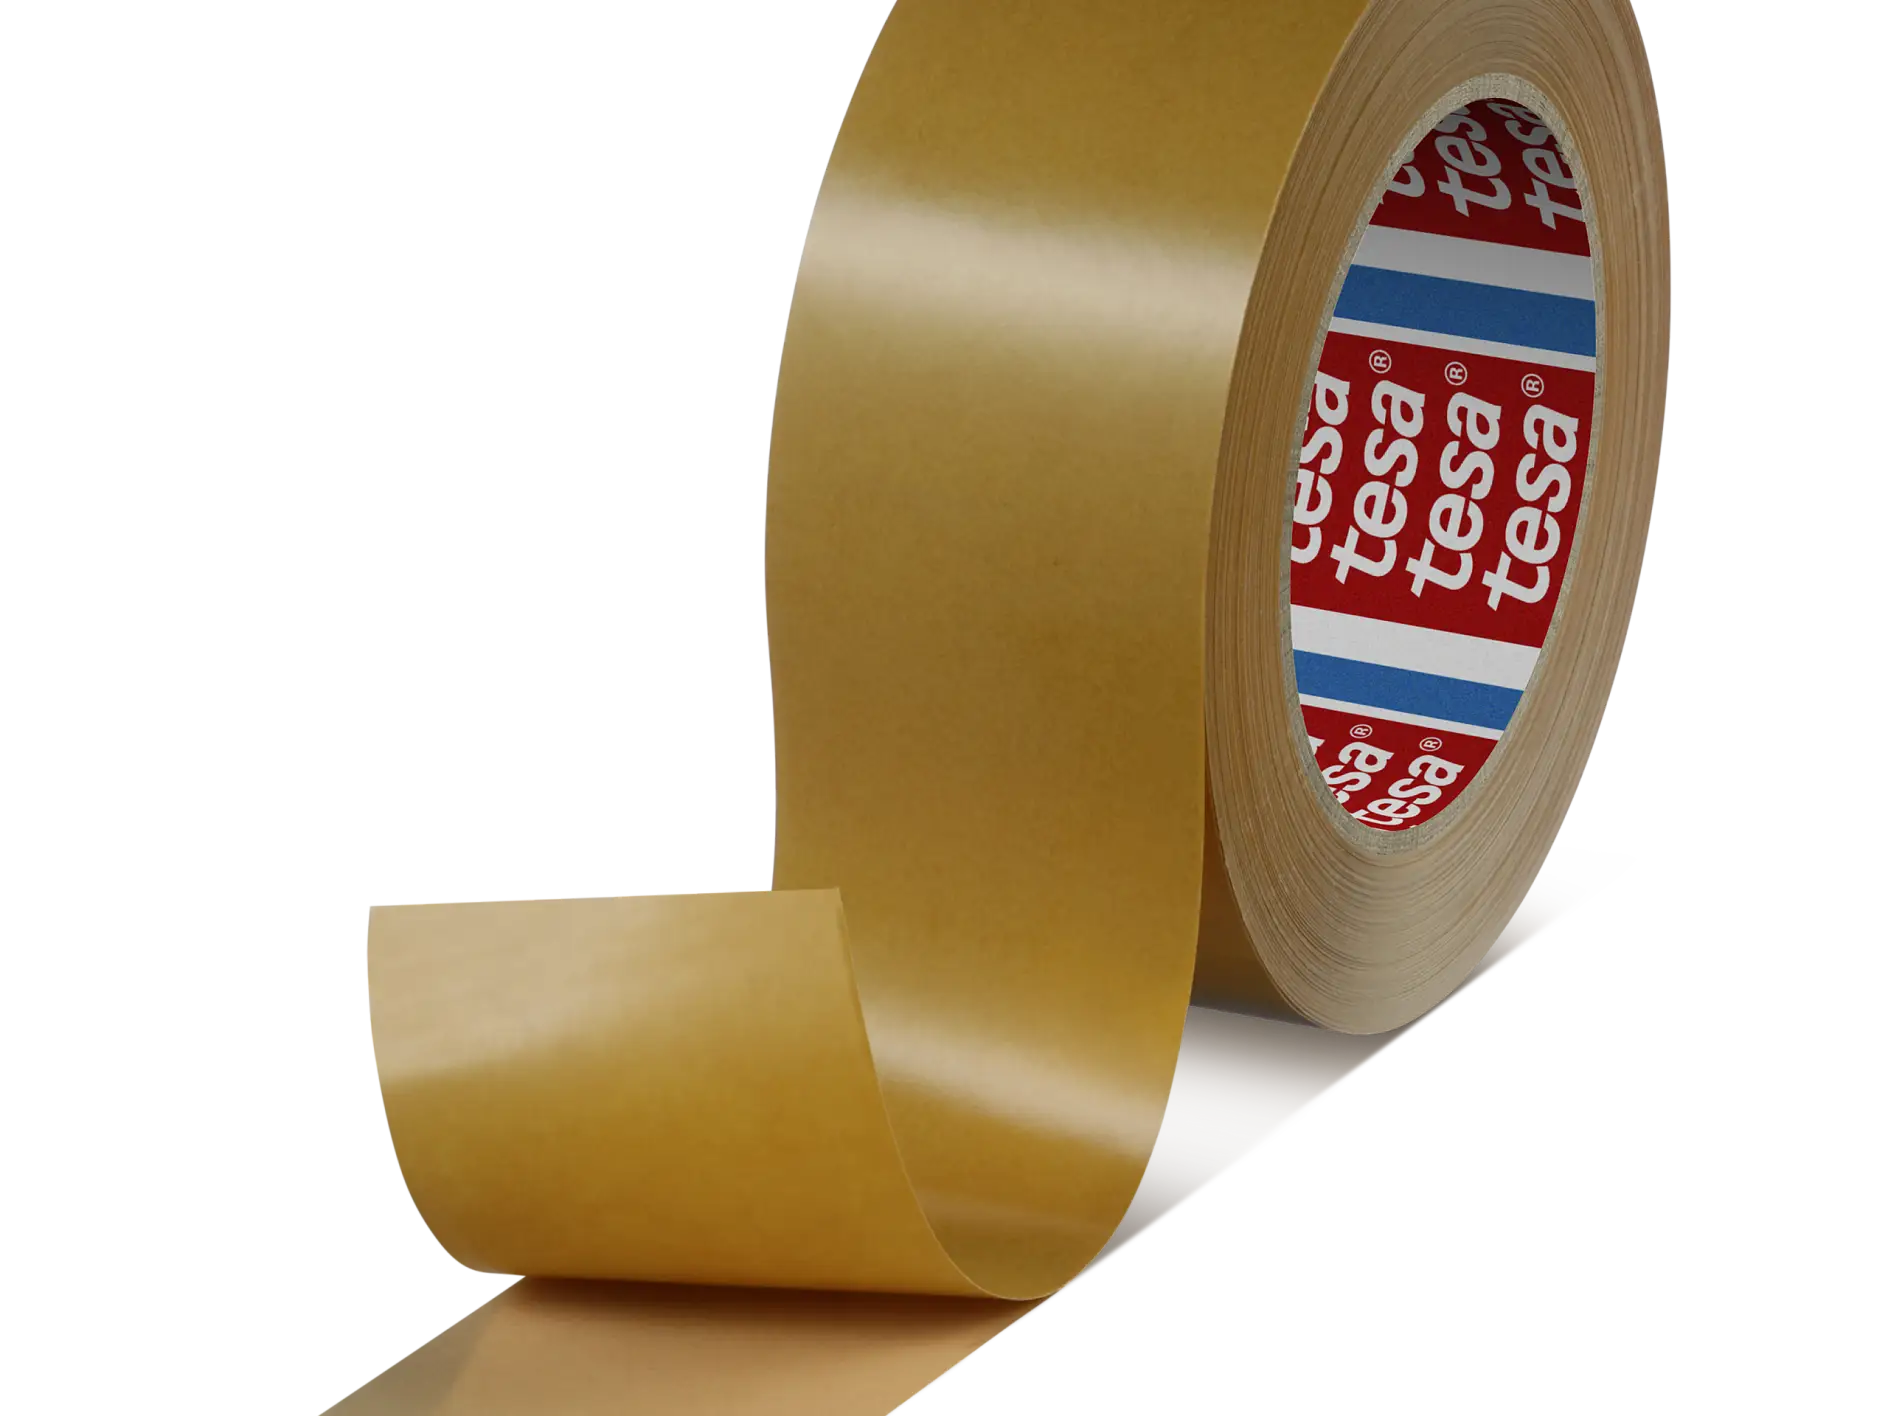 tesa-haf-8410-60-amber-reactive-mounting-tape-brown-084100001400-pr